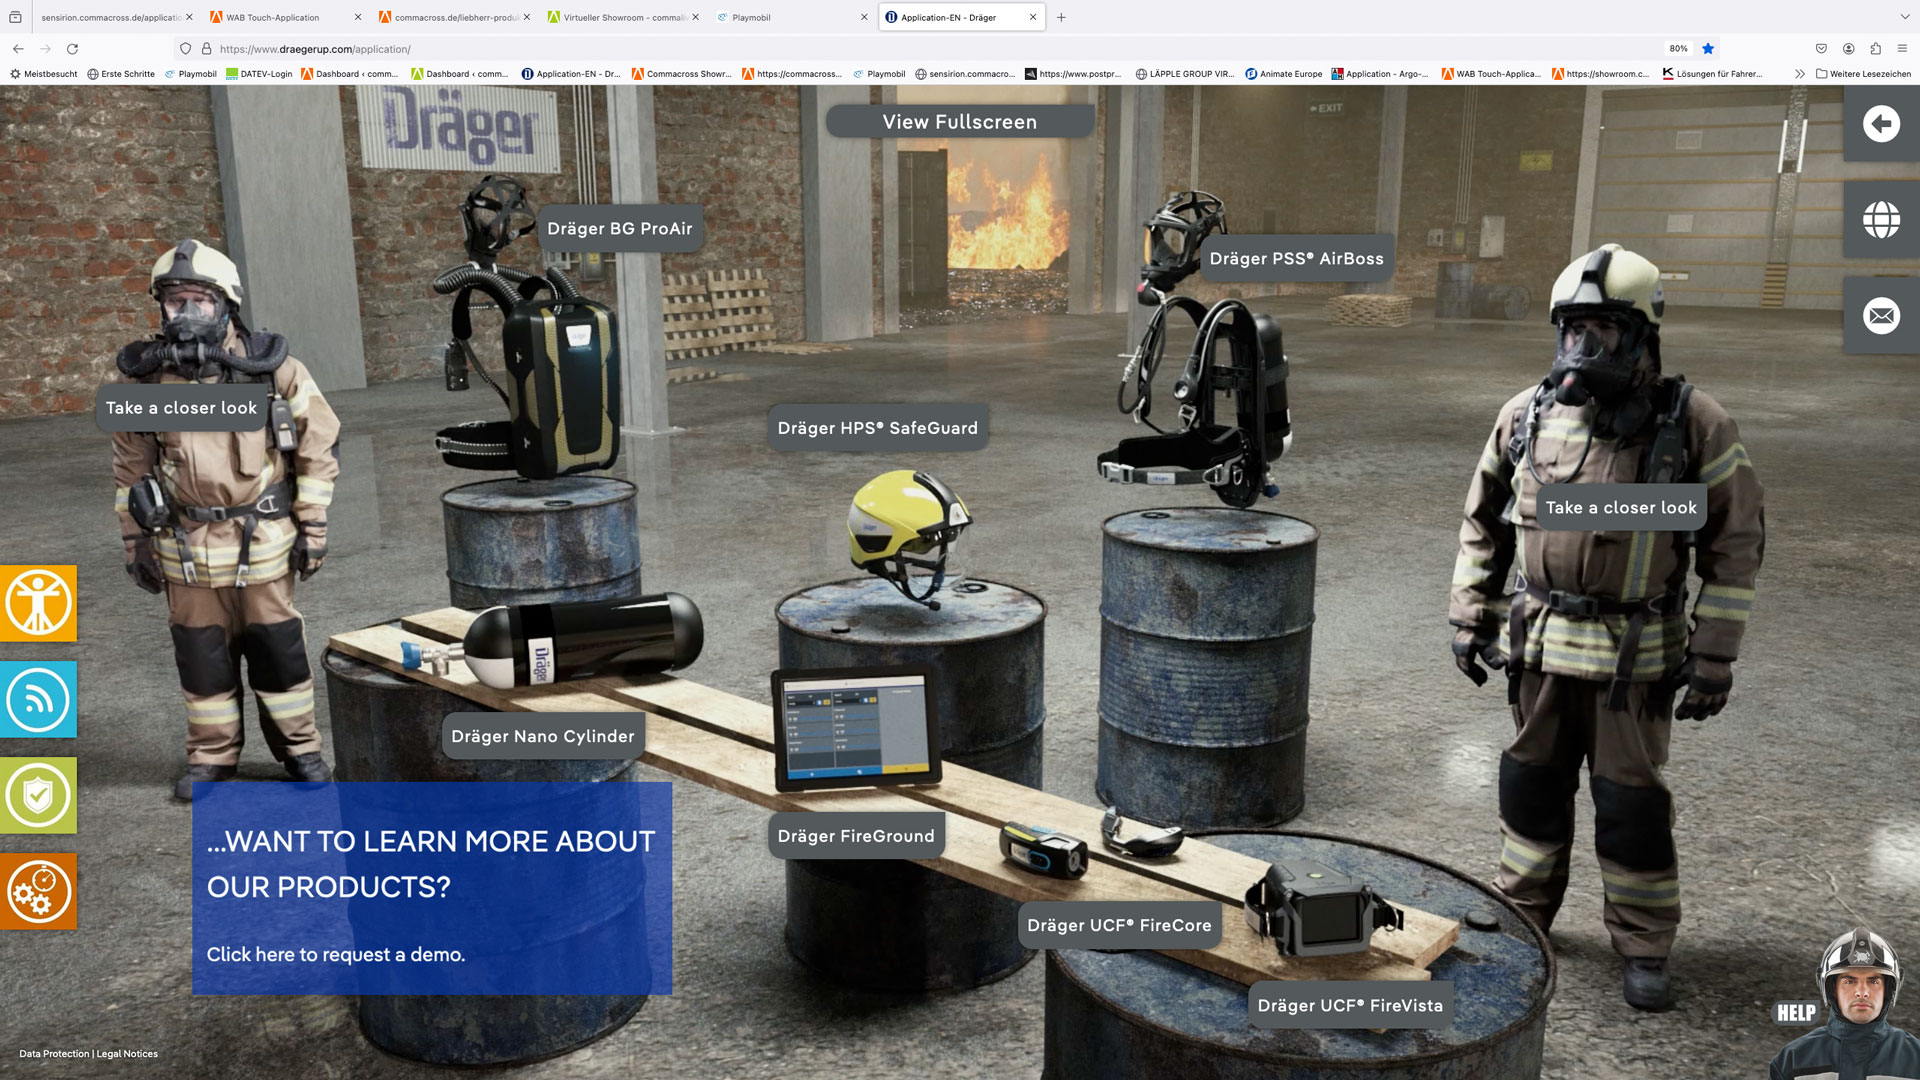 3D Ausstellung der Produkte von Dräger im virtuellen Showroom